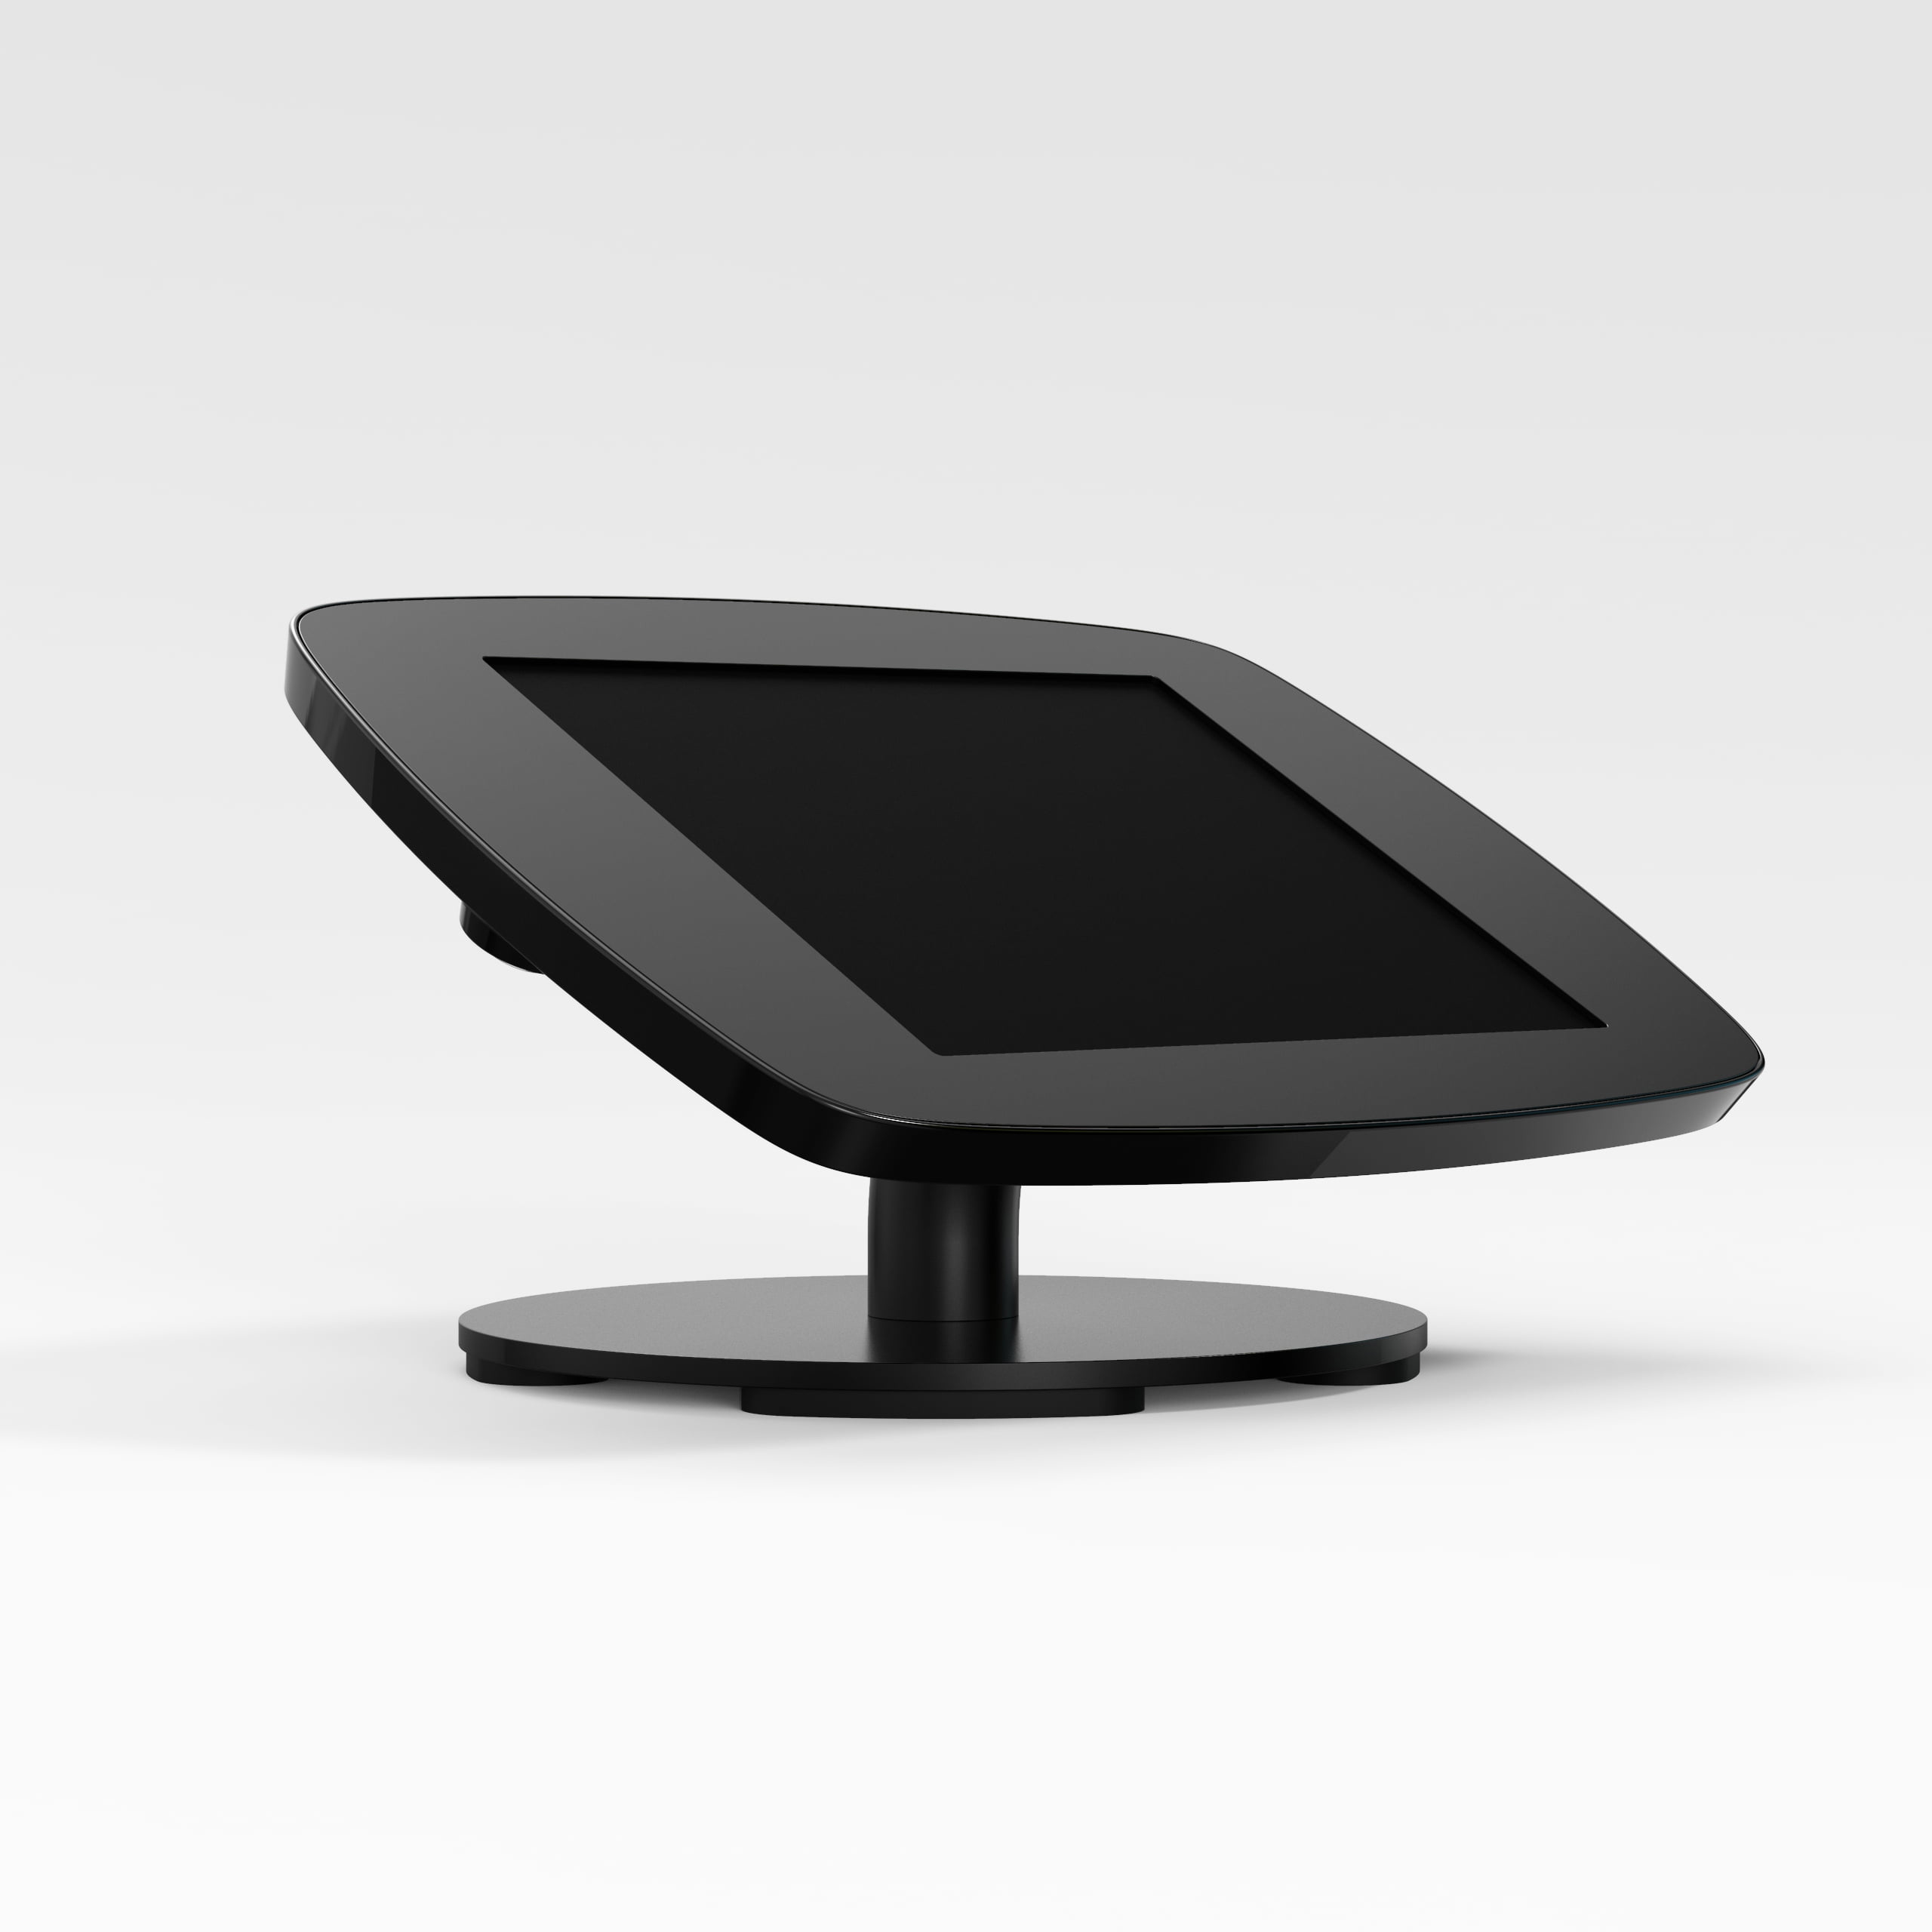 Bouncepad Counter supporto antifurto per tablet 25,6 cm [10.1] Nero (COUNTDBLKOPENCAM/OPENHOME A62)